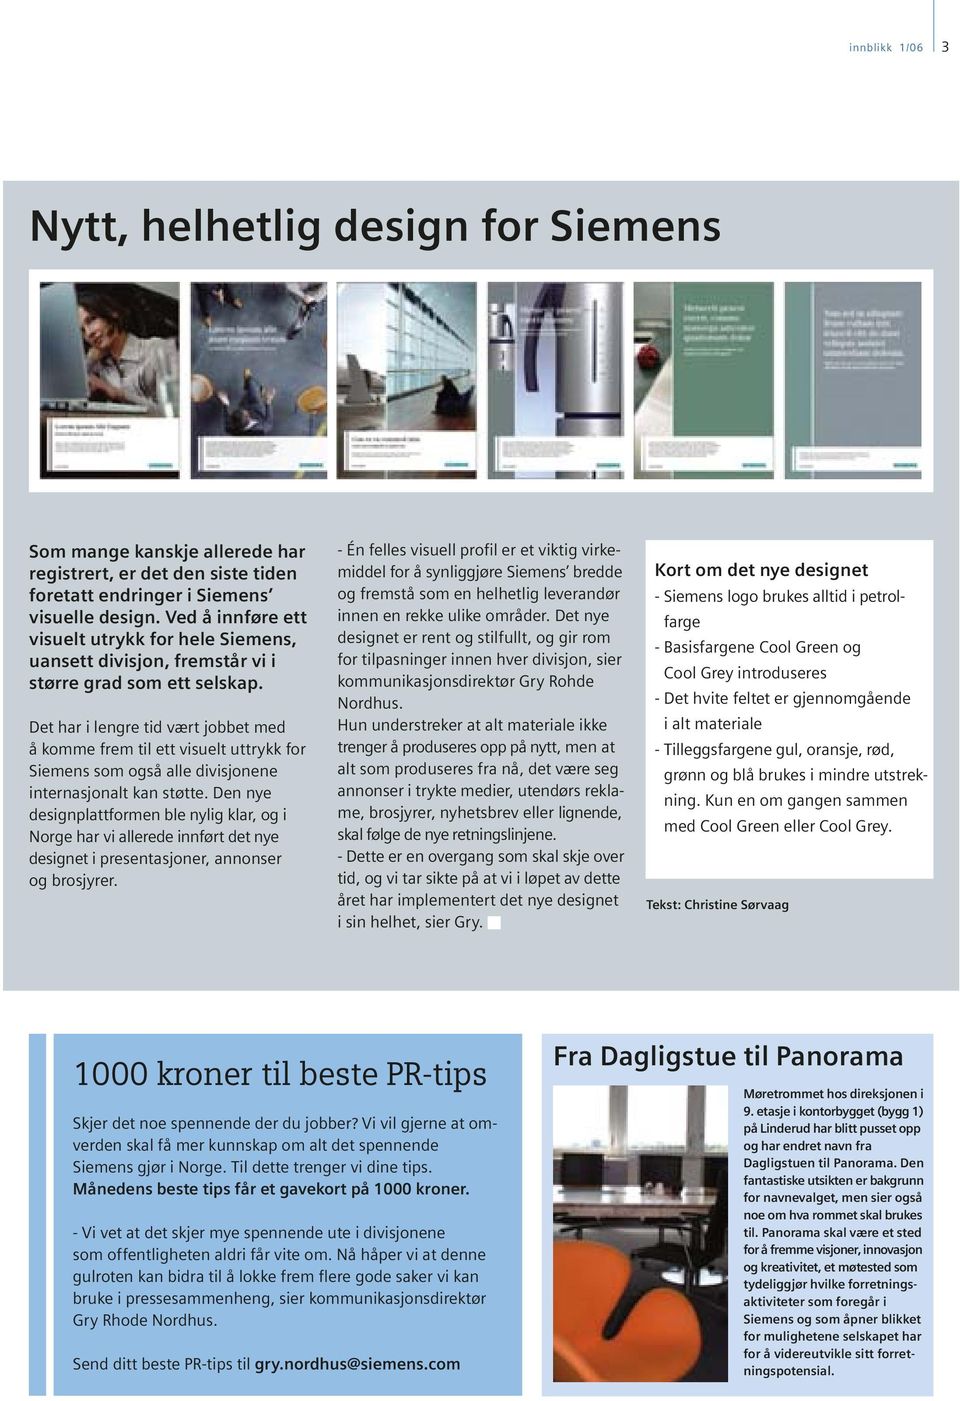 Det har i lengre tid vært jobbet med å komme frem til ett visuelt uttrykk for Siemens som også alle divisjonene internasjonalt kan støtte.